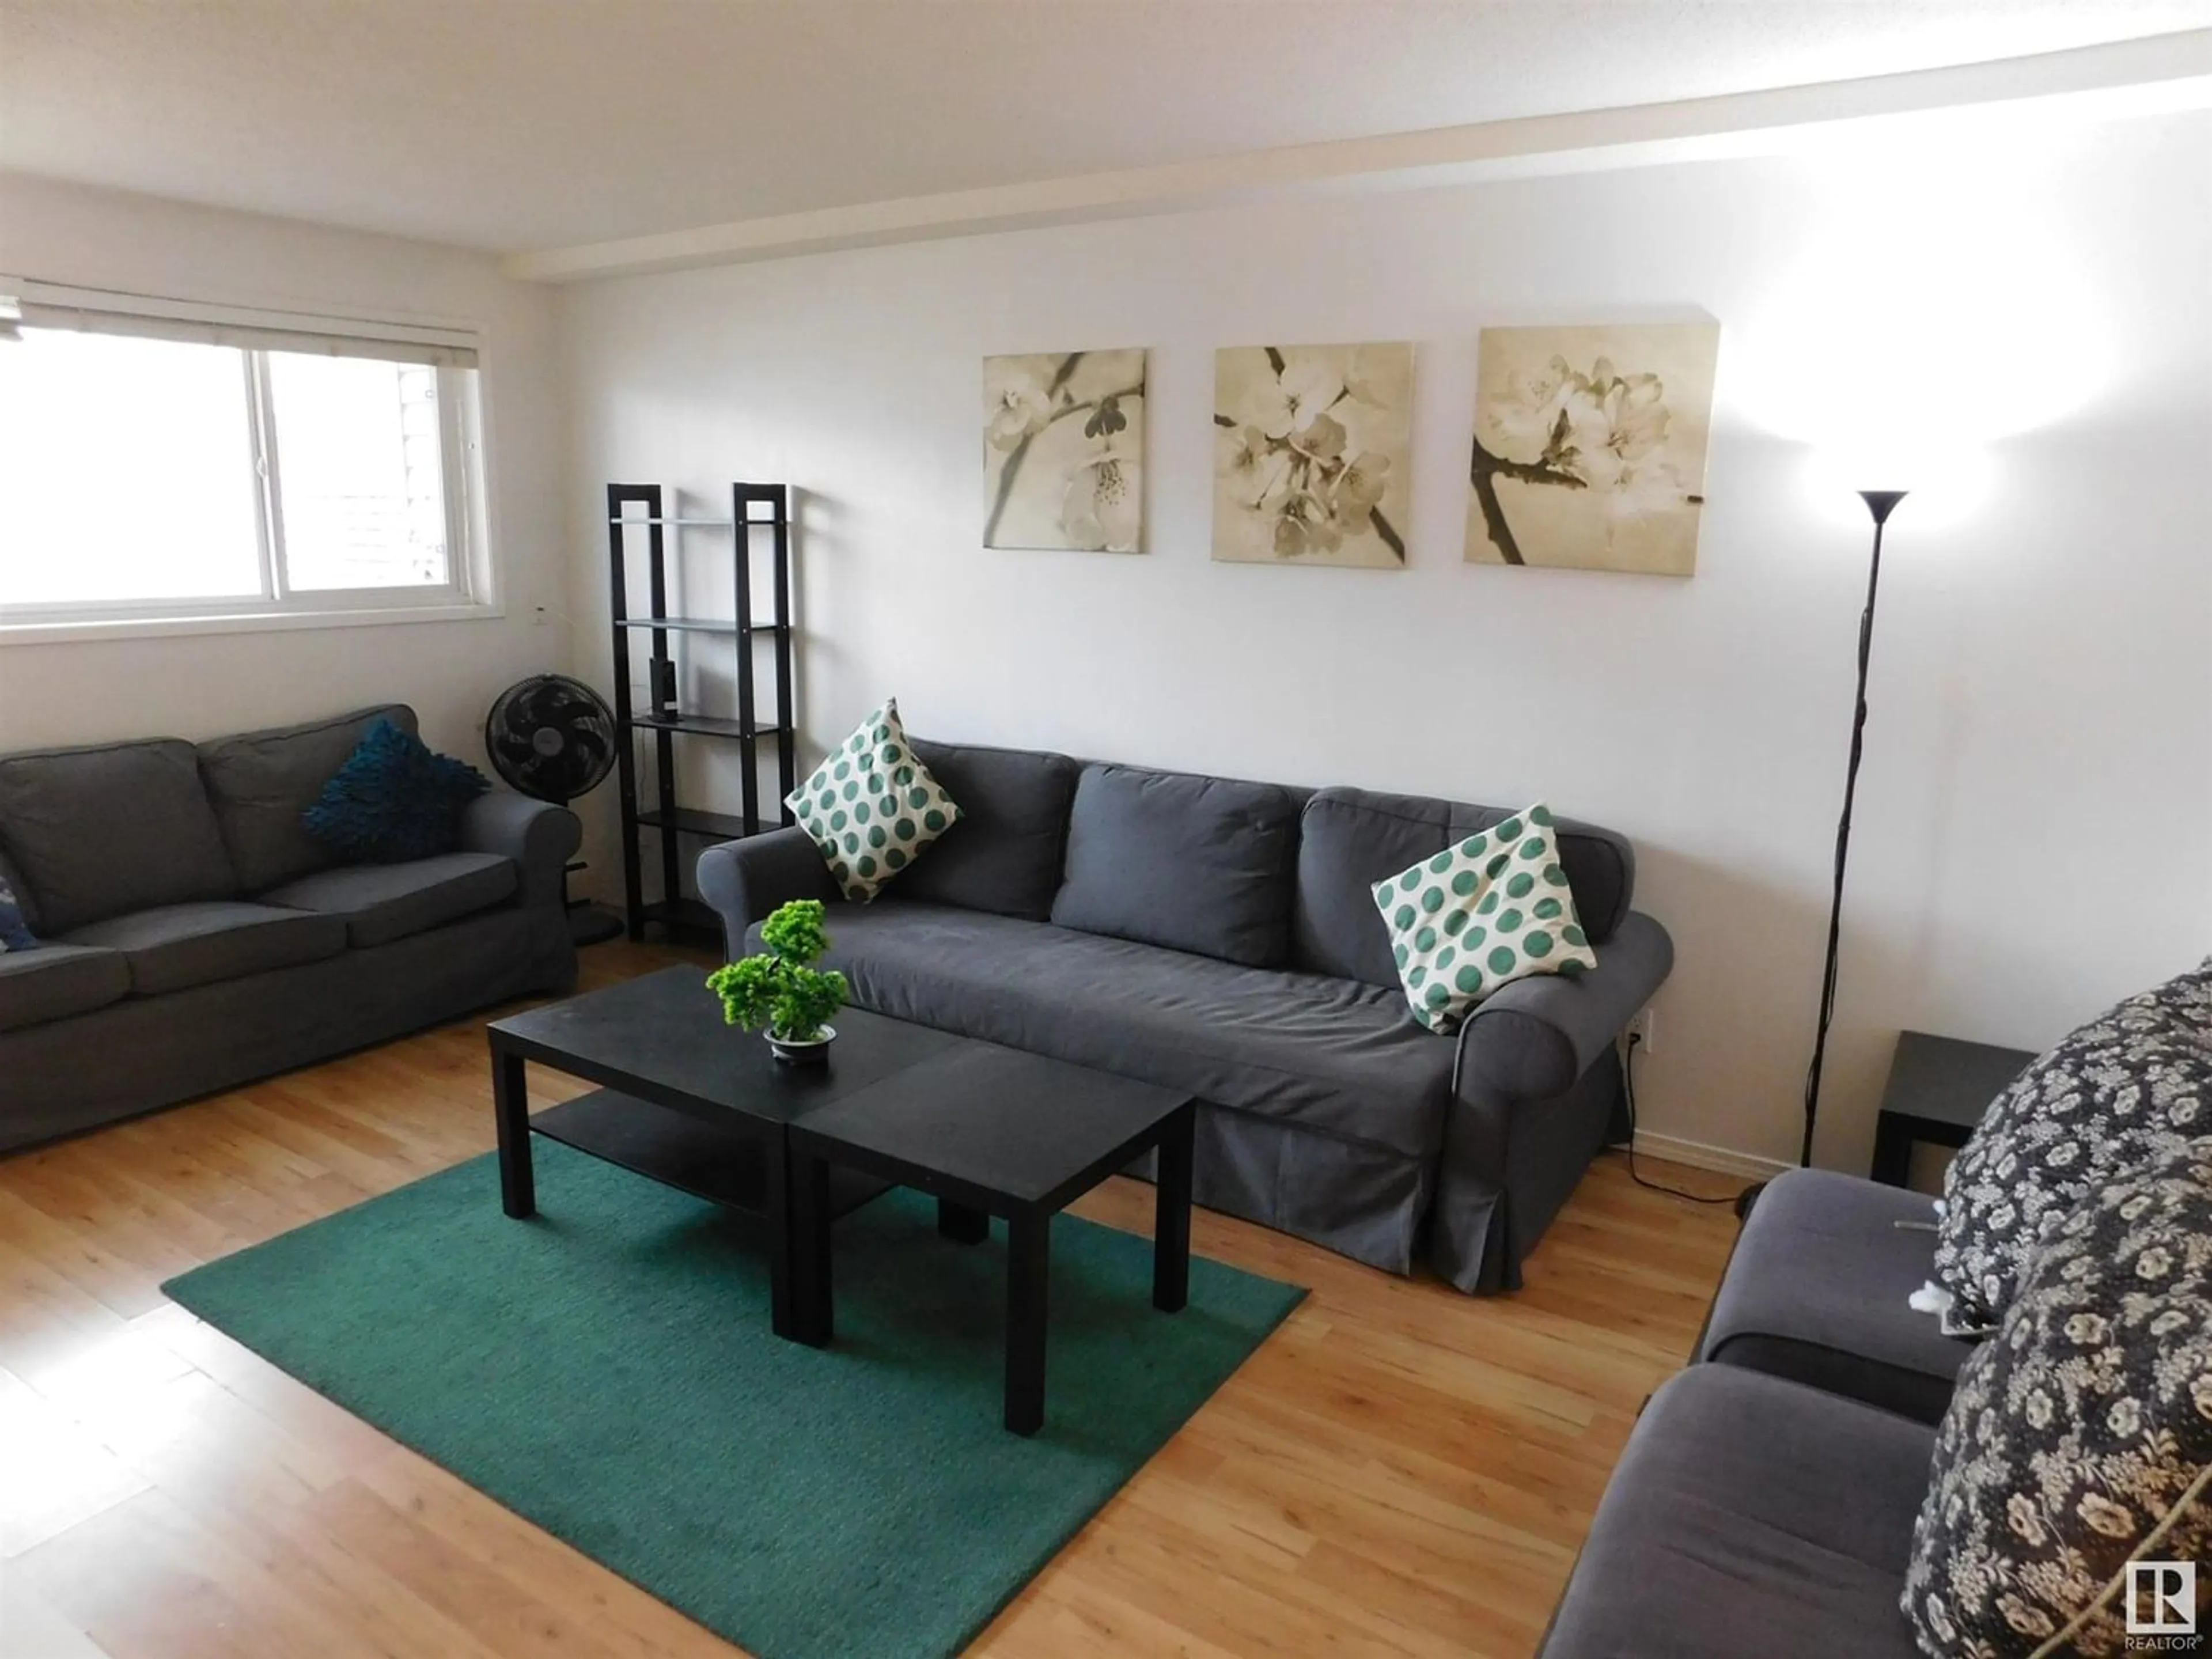 Living room for #101 10815 83 AV NW NW, Edmonton Alberta T6E2E6